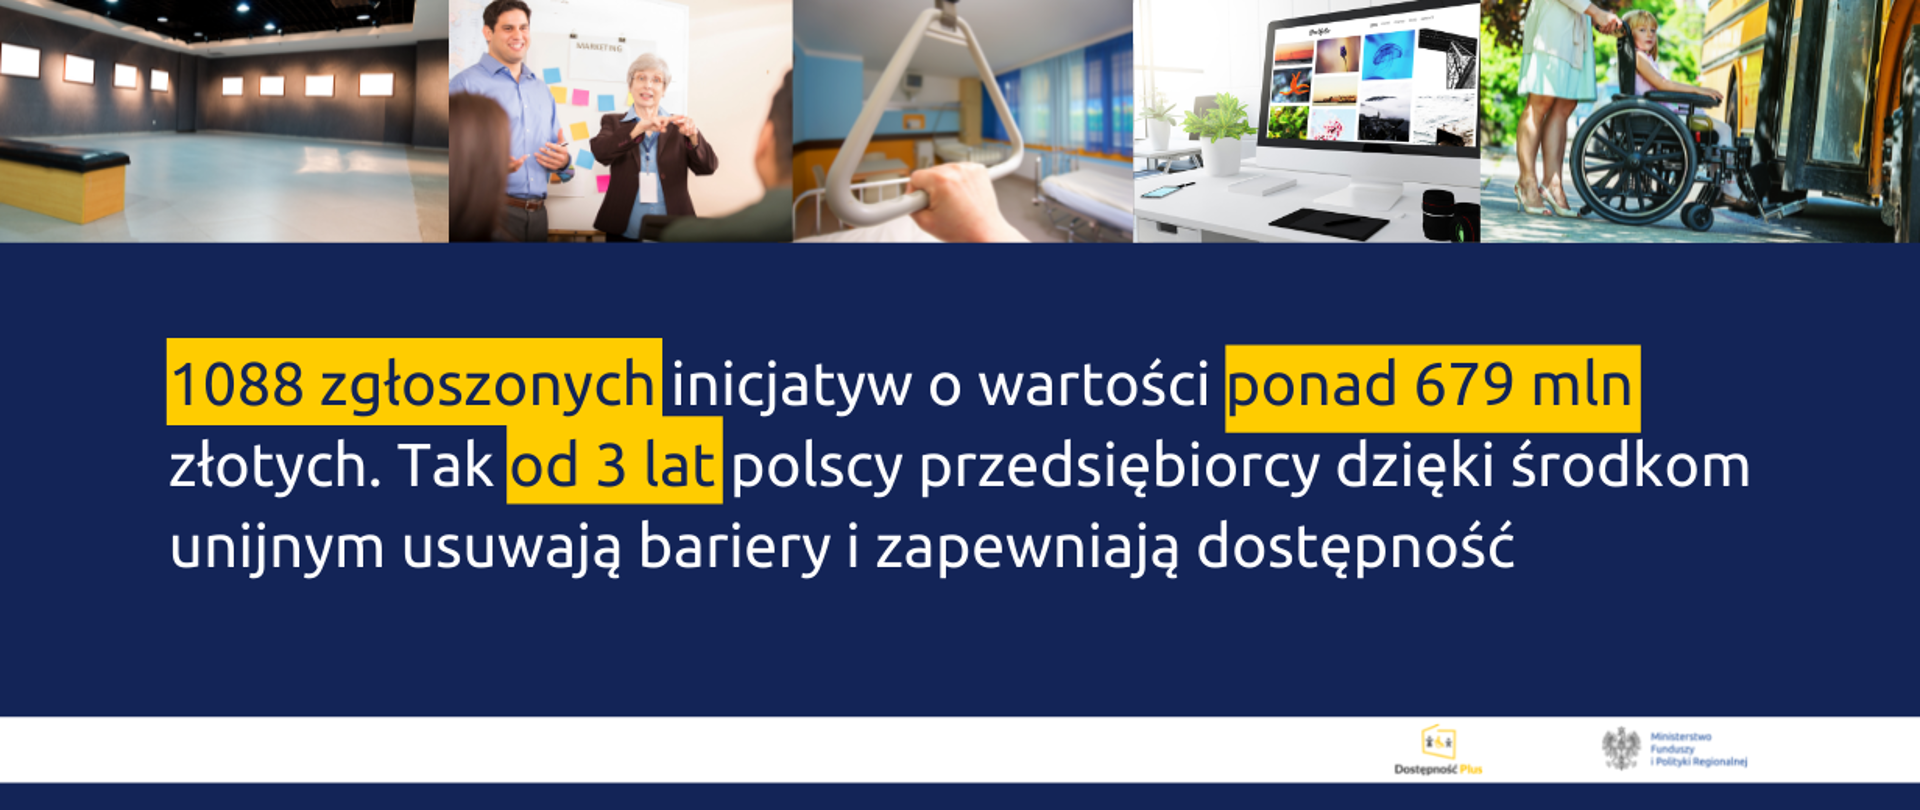 Na grafice u góry 5 obrazków związanych z niepełnosprawnością, poniżej napis: "1088 zgłoszonych inicjatyw o wartości ponad 679 mln złotych. Tak od 3 lat polscy przedsiębiorcy dzięki środkom unijnym usuwają bariery i zapewniają dostępność." Na dole logotypy.
